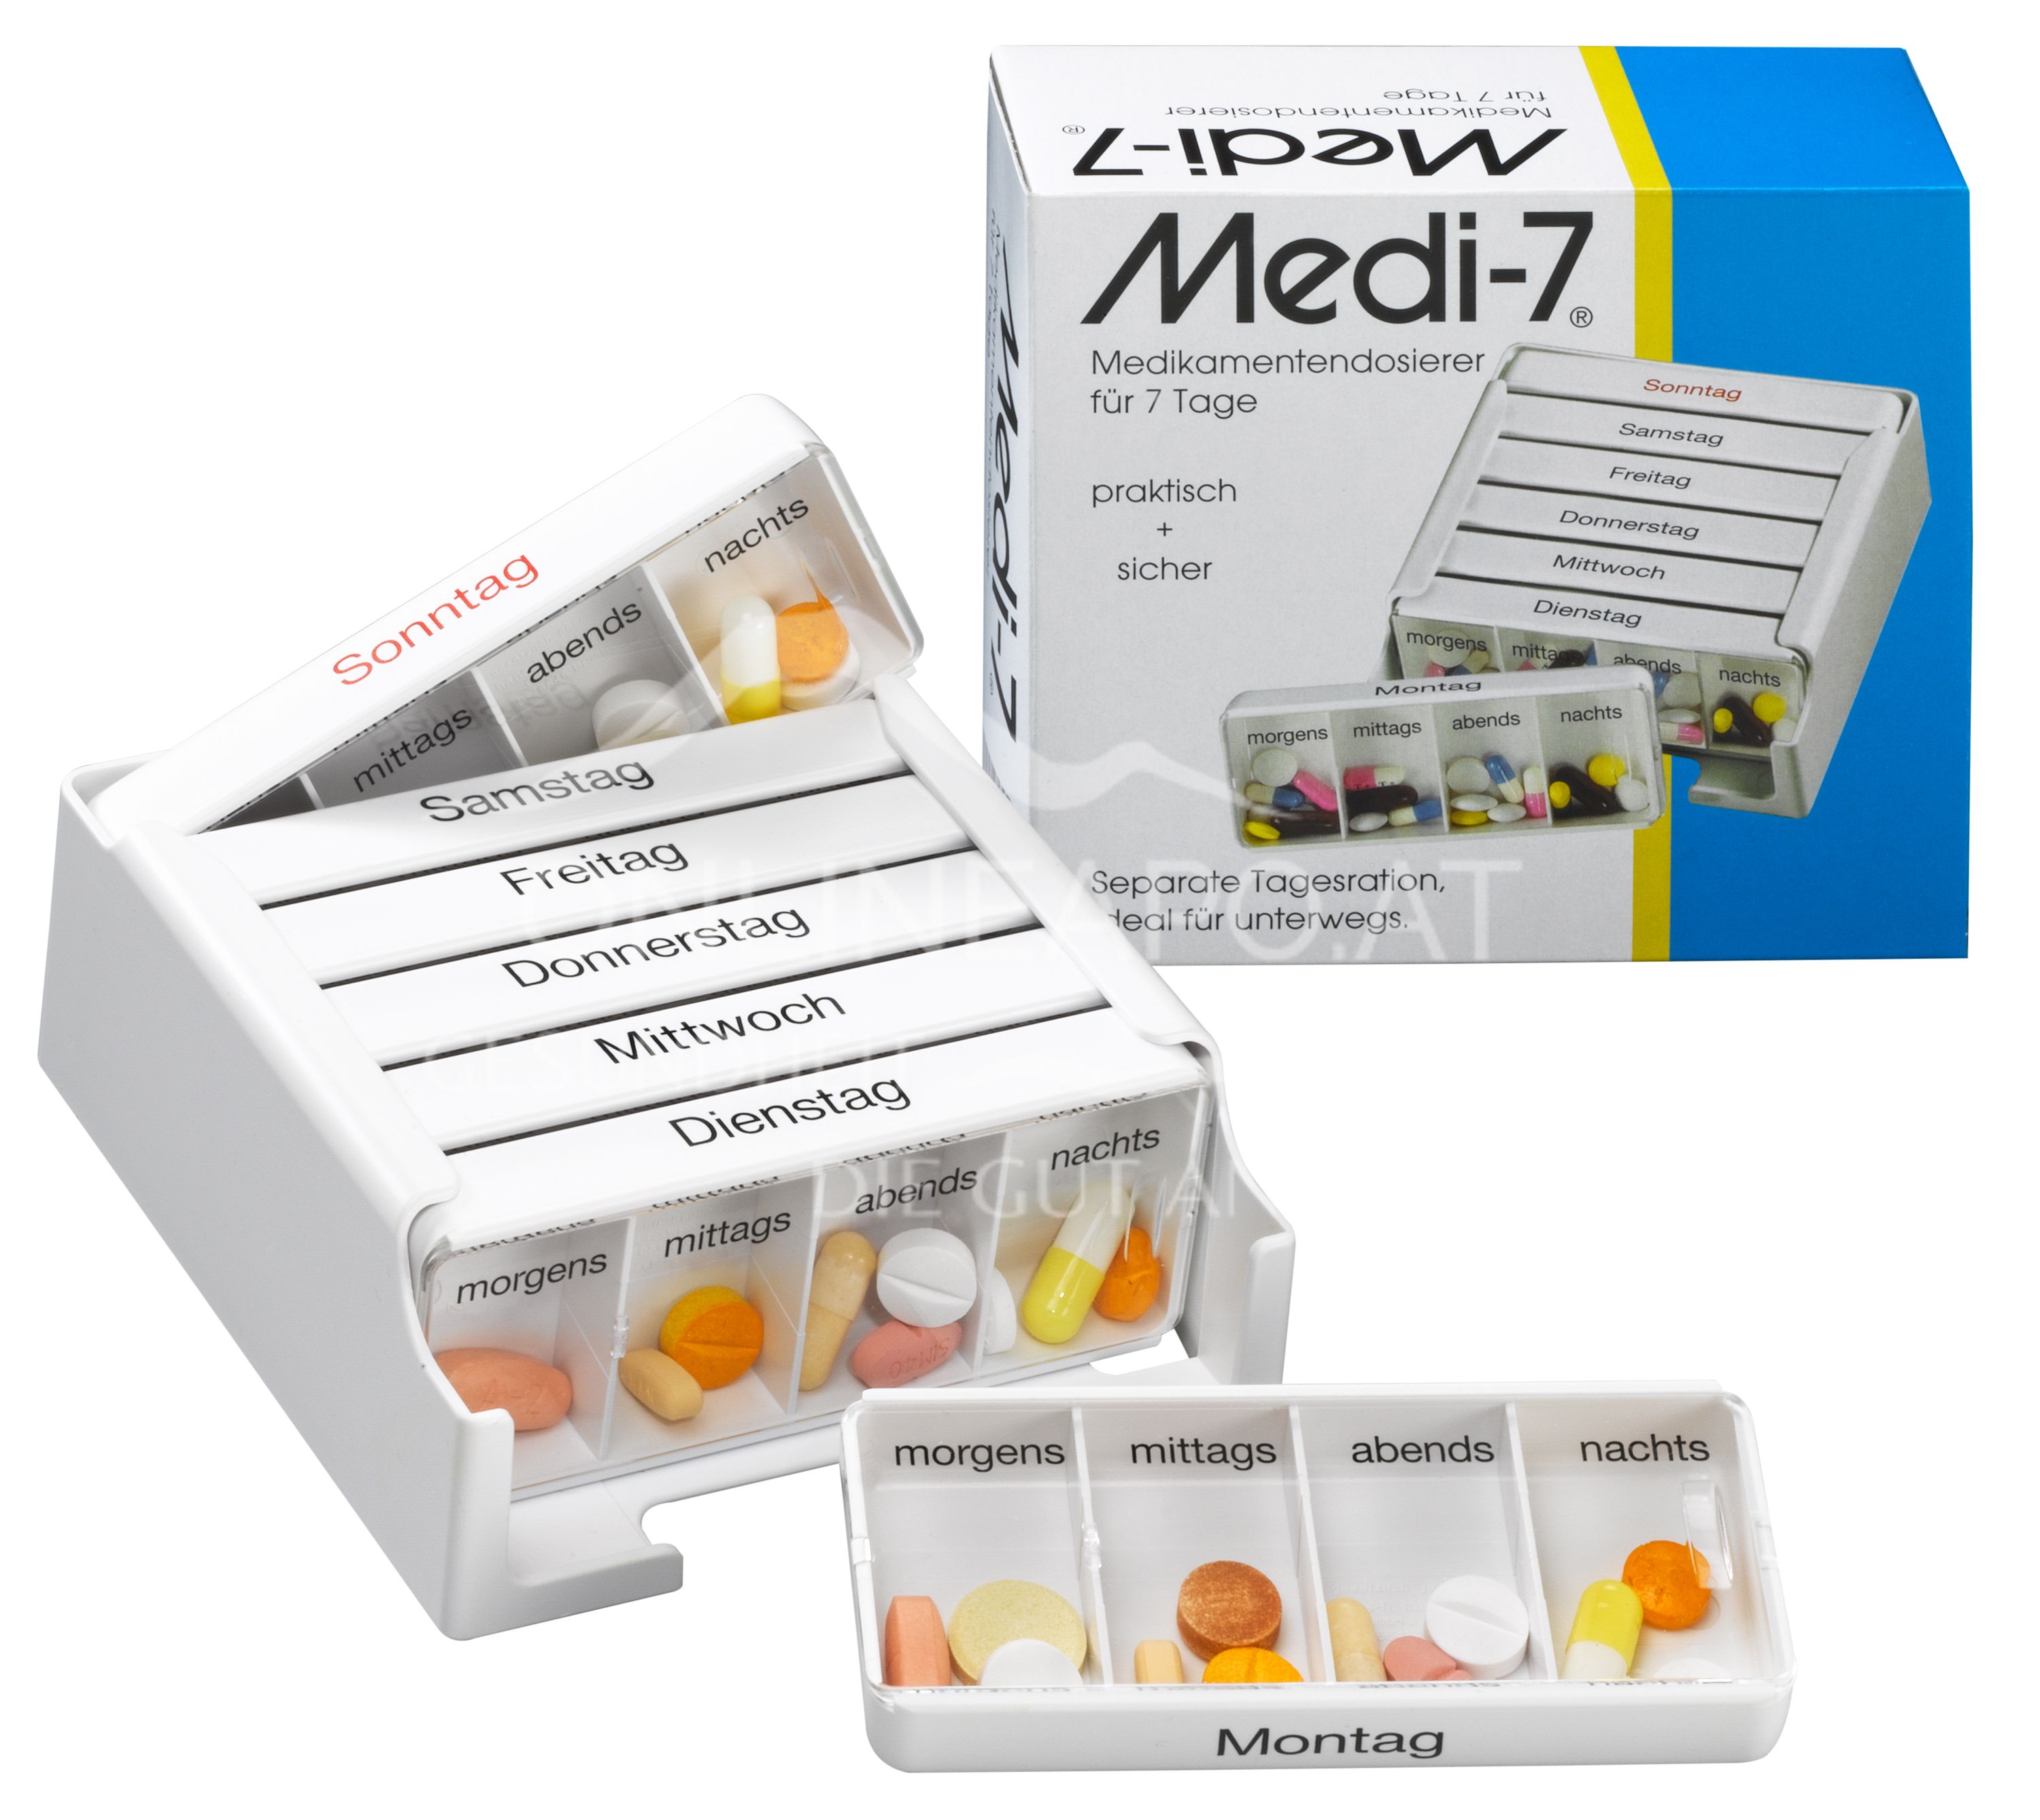 Medi-7 Medikamentendosierer für 7 Tage